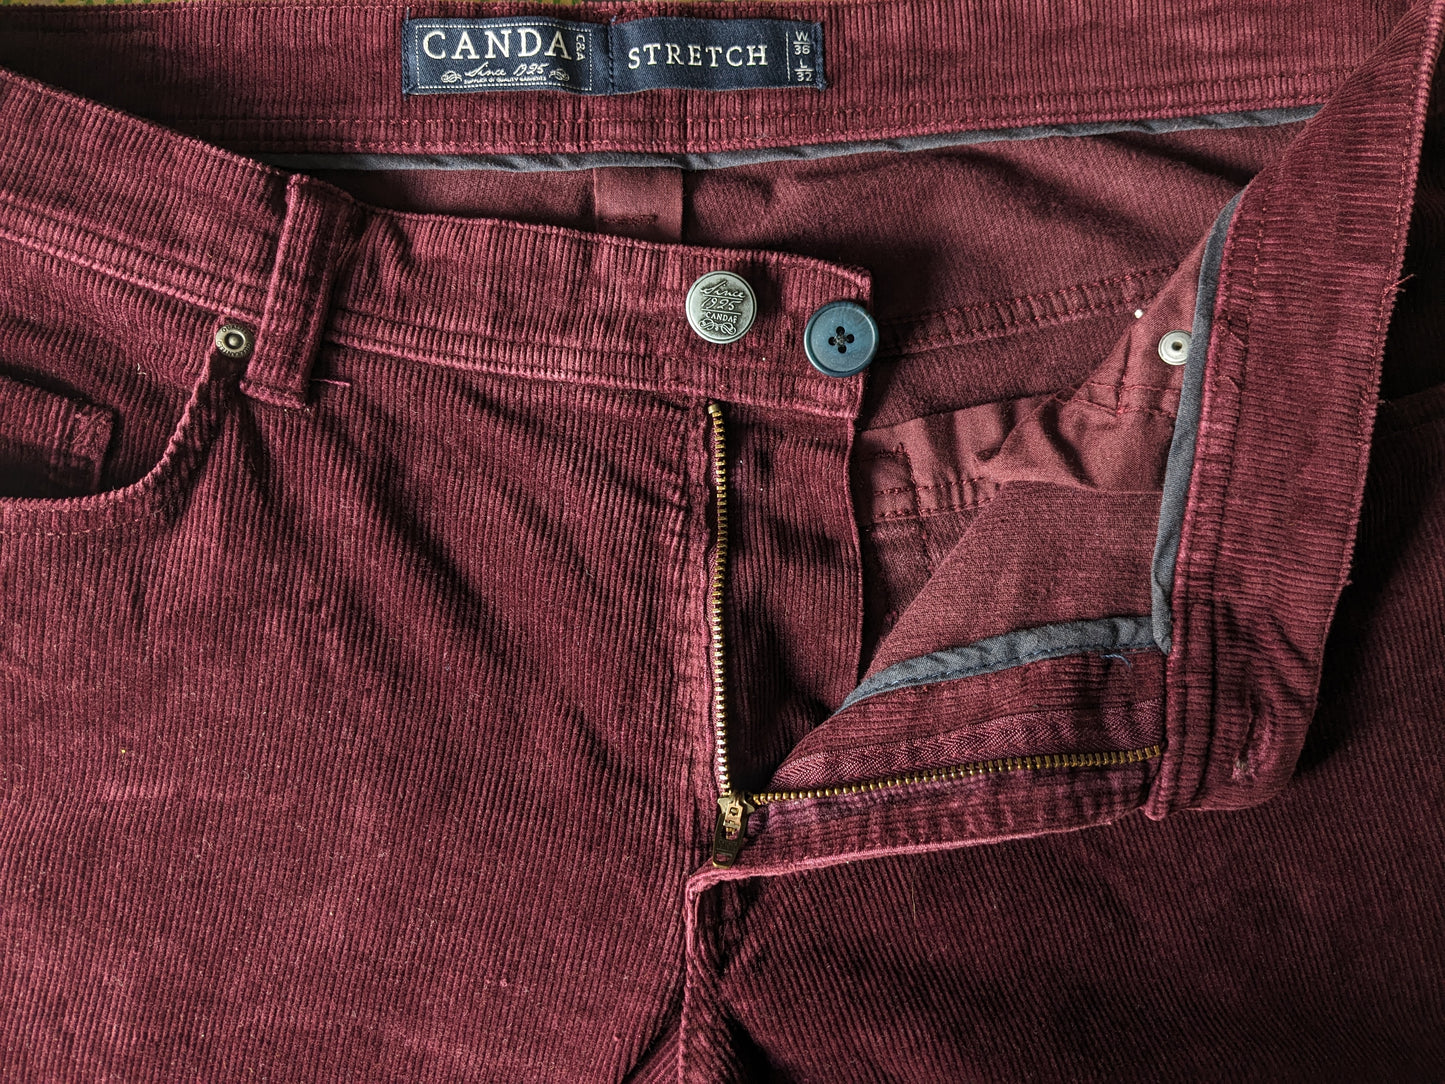 Canda Rib Pantalon. Bordeaux coloré. Taille W36 - L32. Extensible.